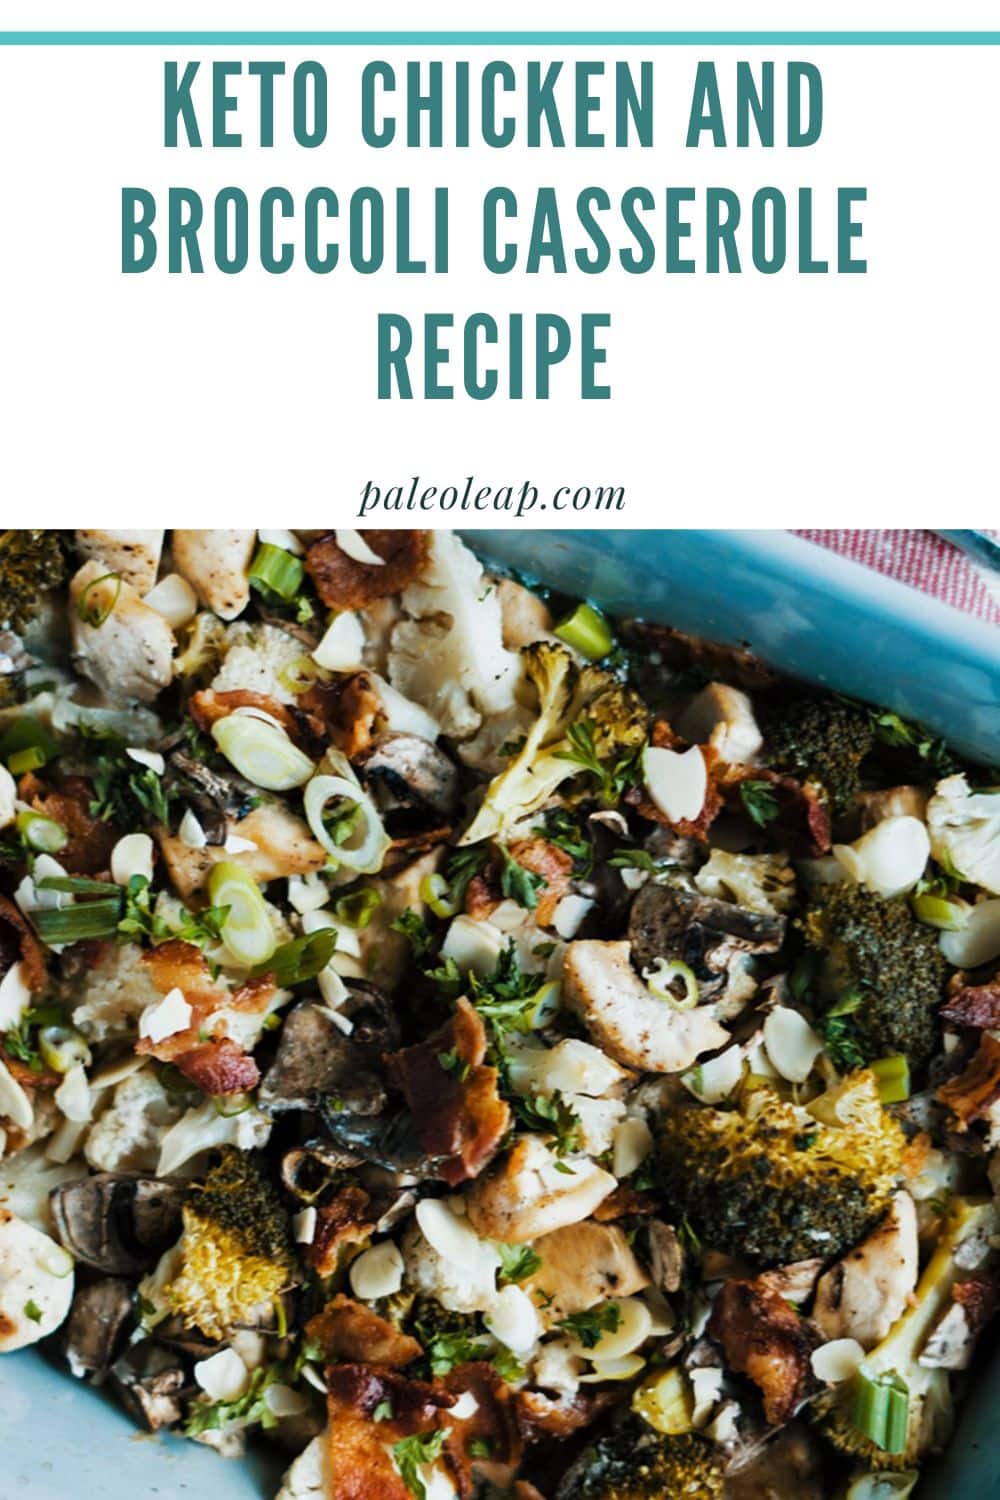 Chicken and Broccoli Casserole Recipe | Paleo Leap